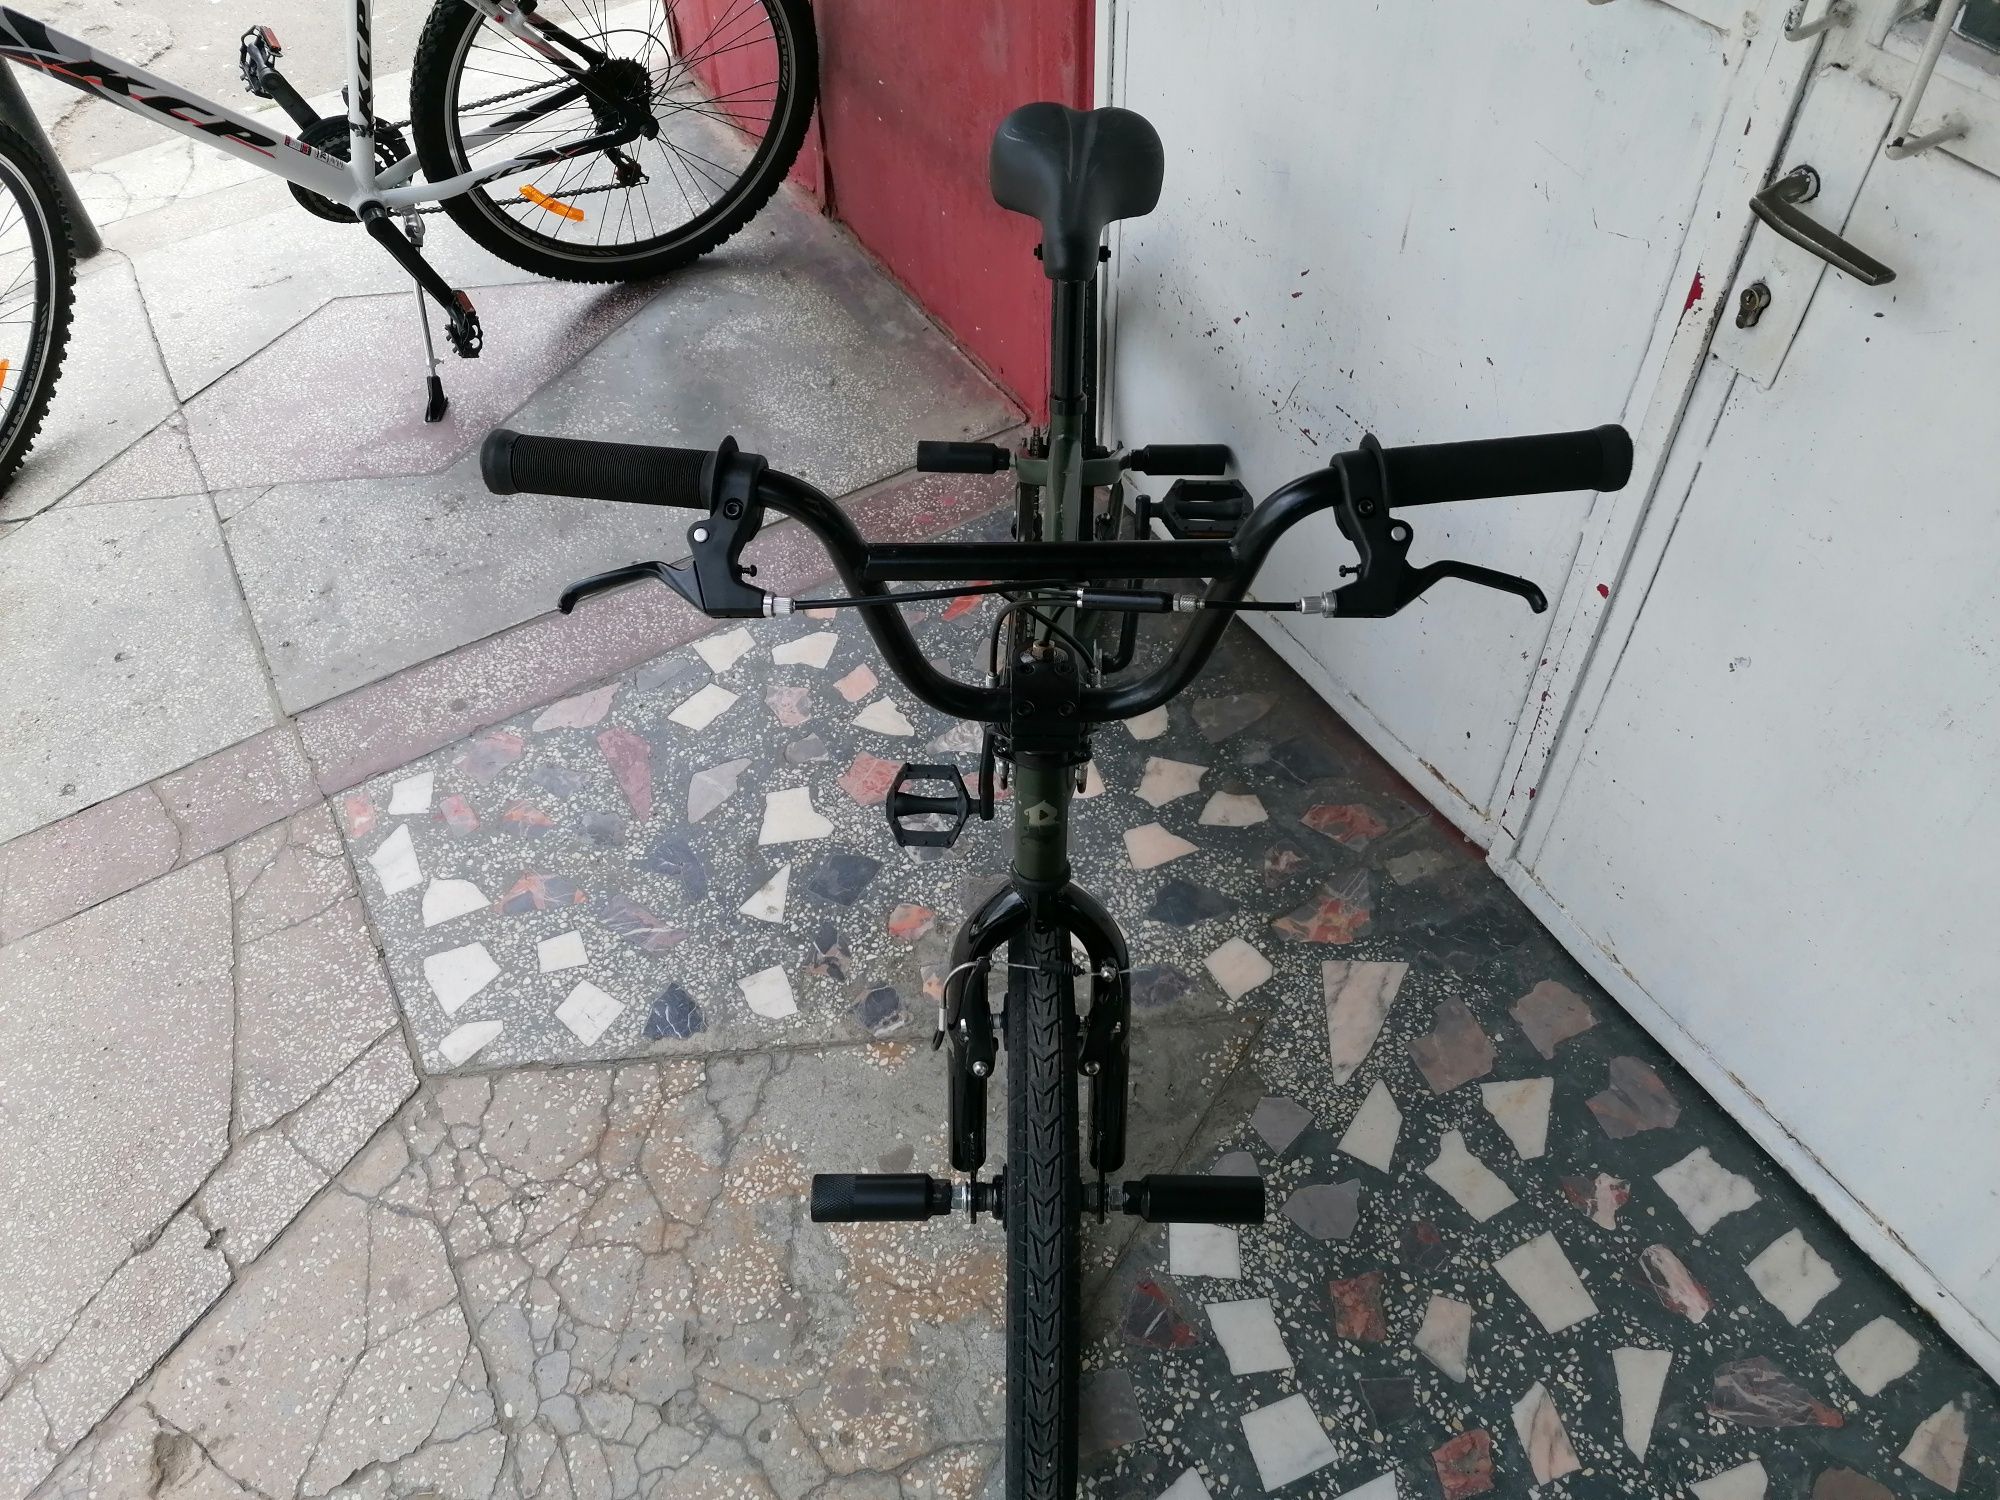 Bicicleta BMX de 20 Bronx